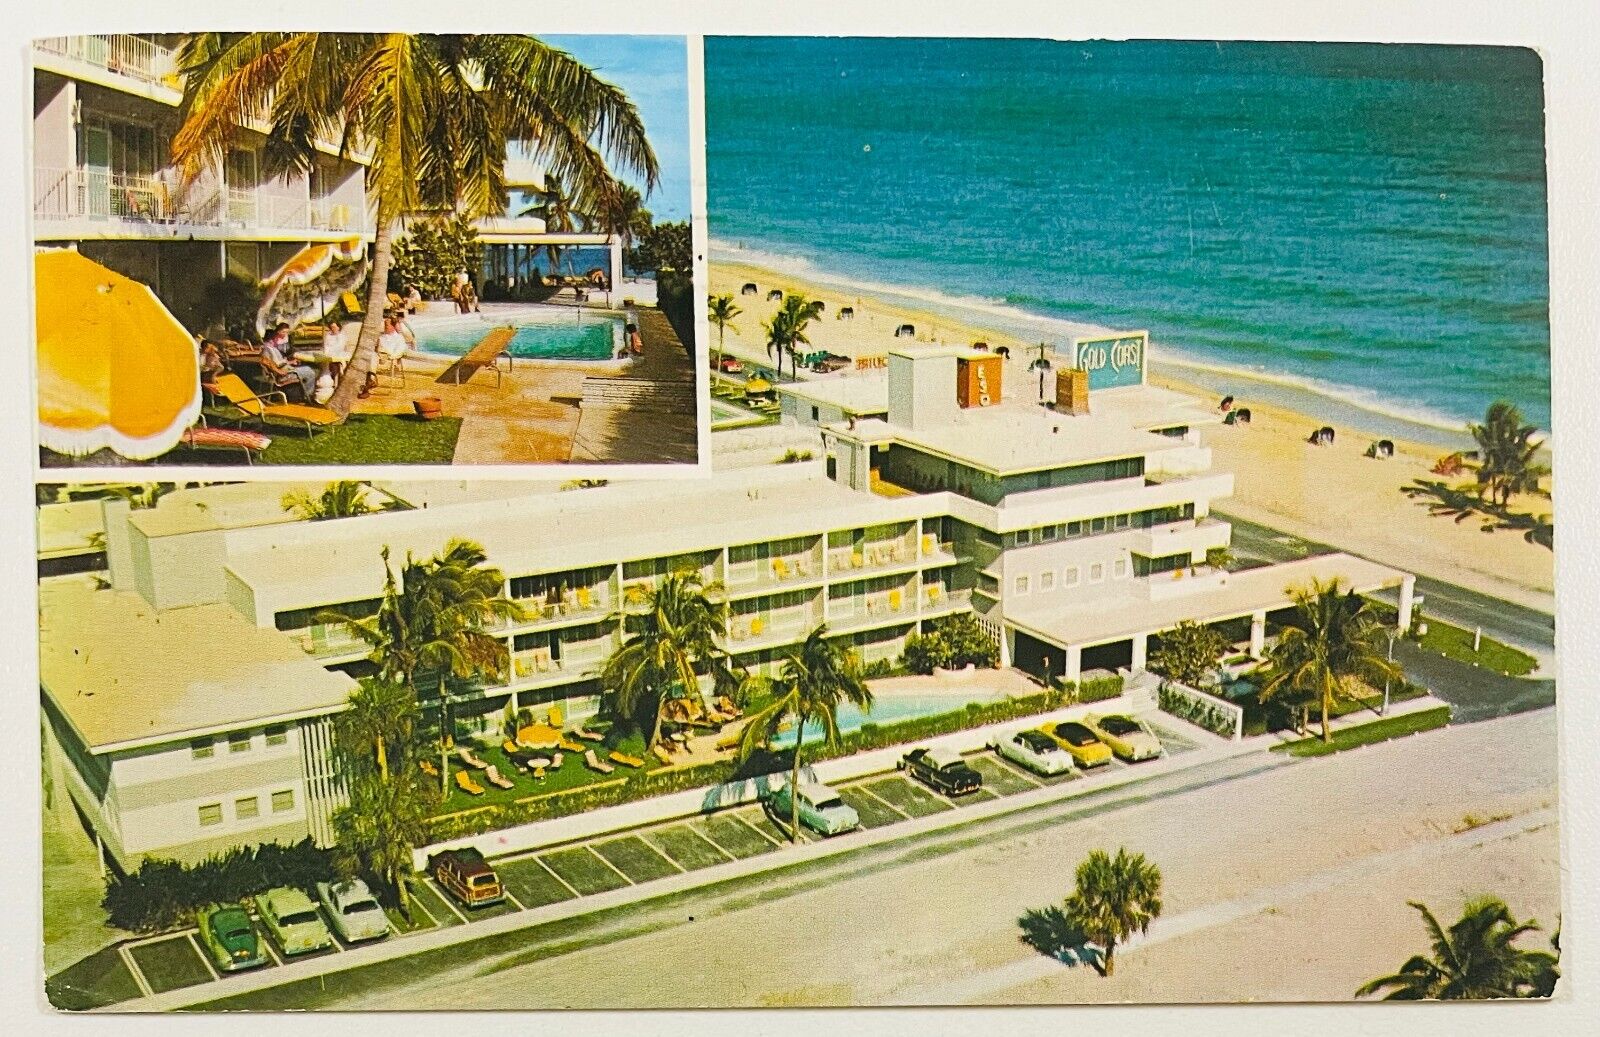 Ft. Lauderdale, FL/Gold Coast Apartments PM1958 VTG Postcard